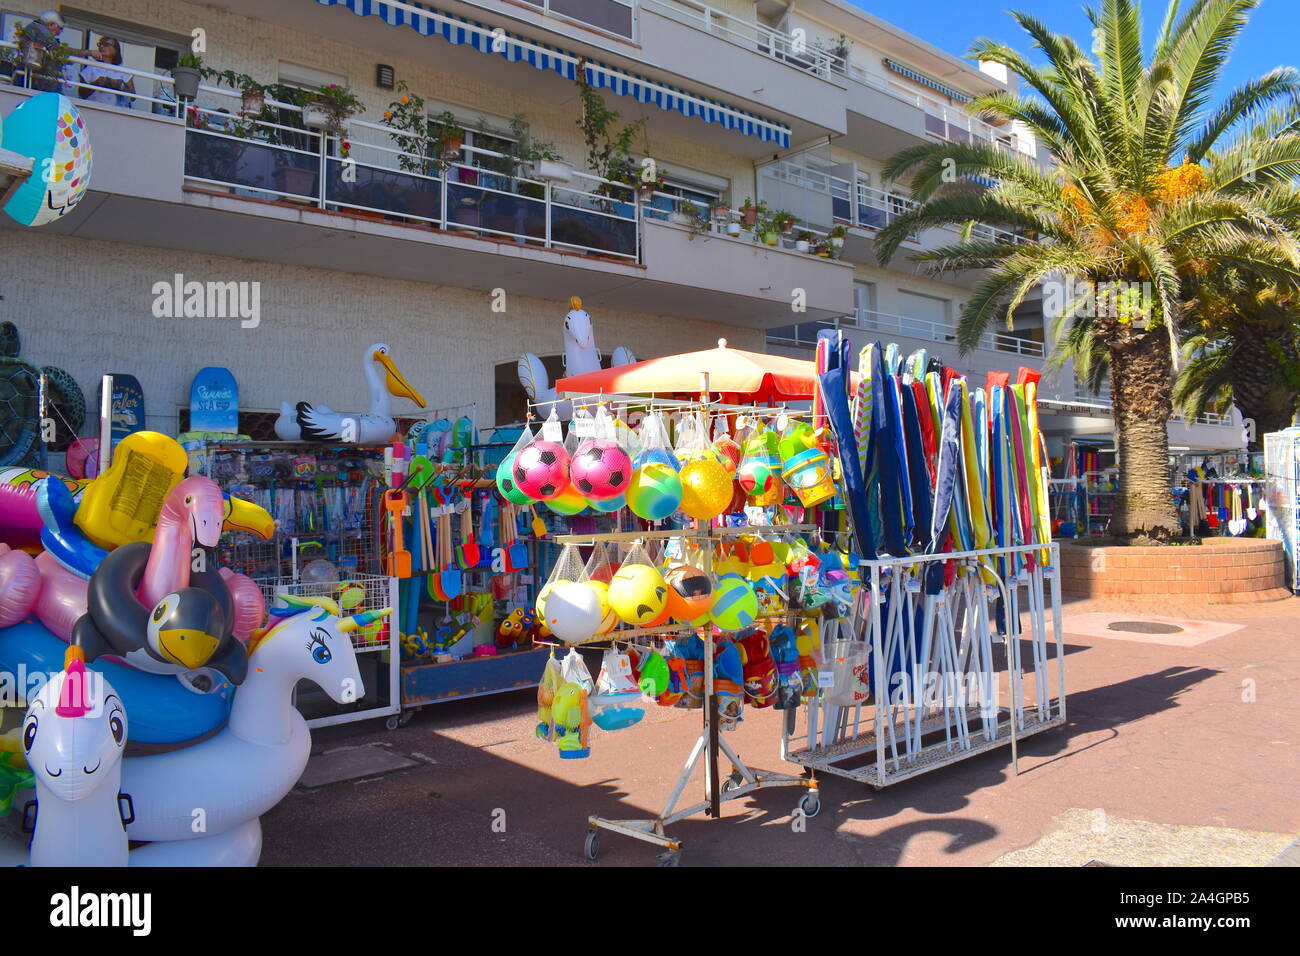 Gut sortierten Shop an der Promenade im Süden von Frankreich Verkauf von Pool und Strand Hin- und Herbewegungen und Schlauchboote, Spielen am Strand, Strand und Spielzeug. Hohe Palme. Stockfoto